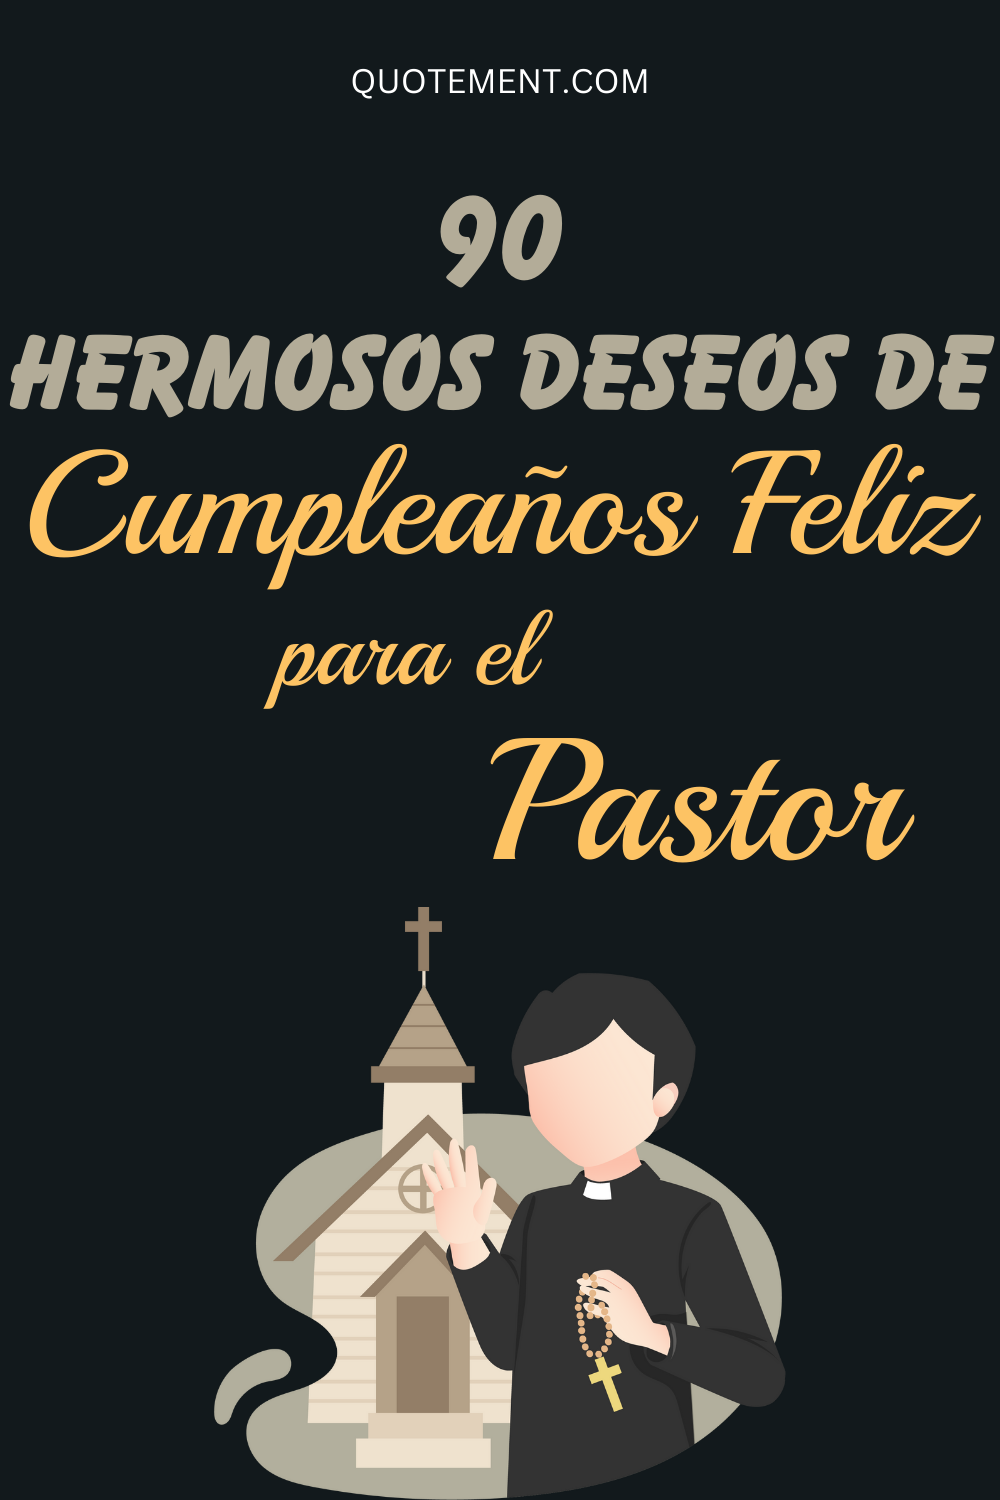 90 Hermoso Feliz Cumpleaños Pastor Deseos y Mensajes